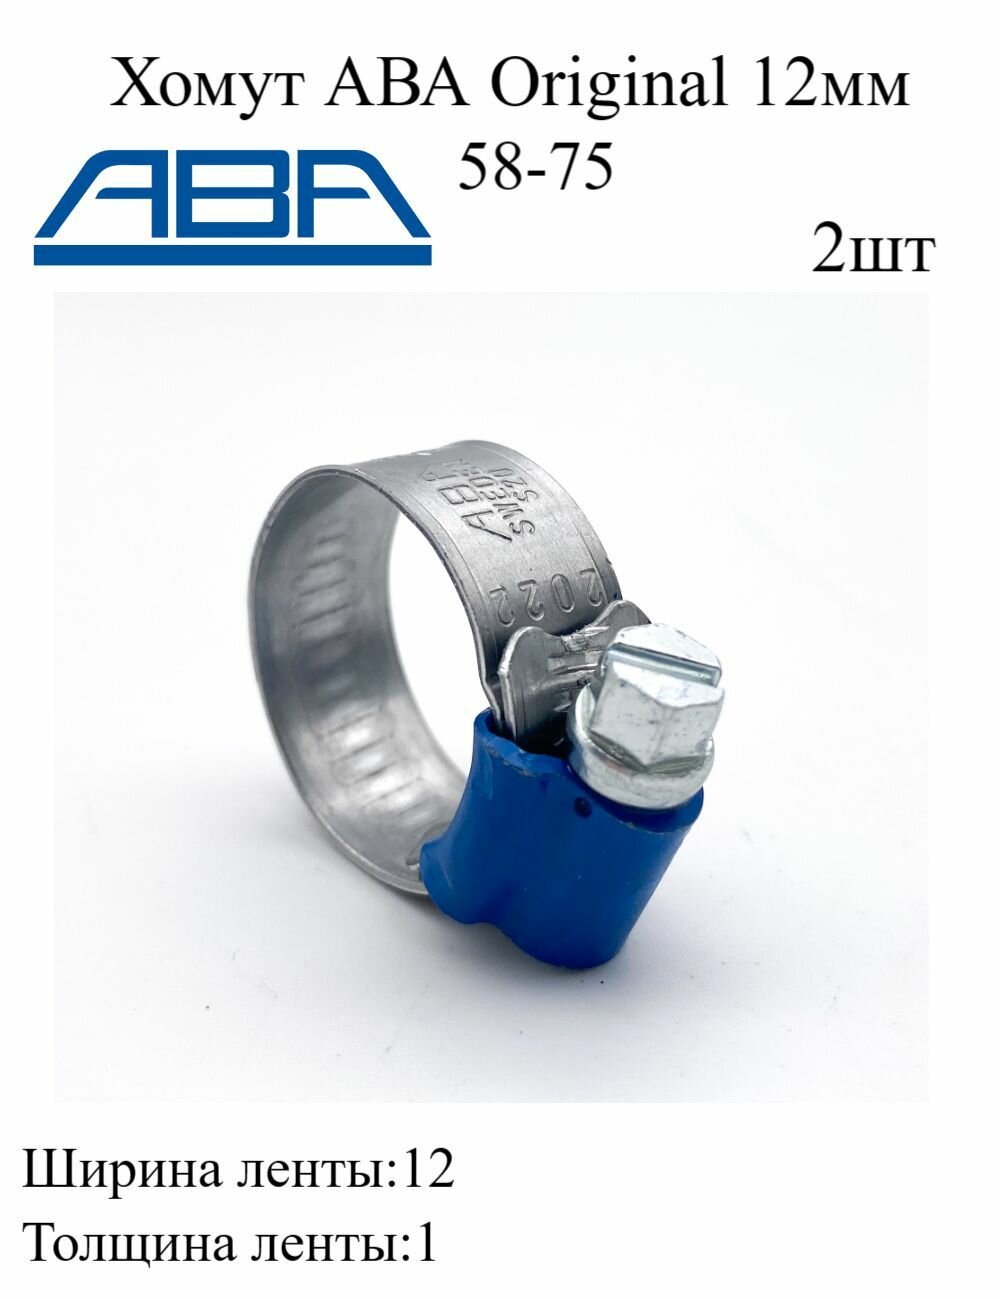 Червячный многоразовый хомут для шланга ABA 12мм 58-75 ленточный металлический для крепления патрубков 2шт